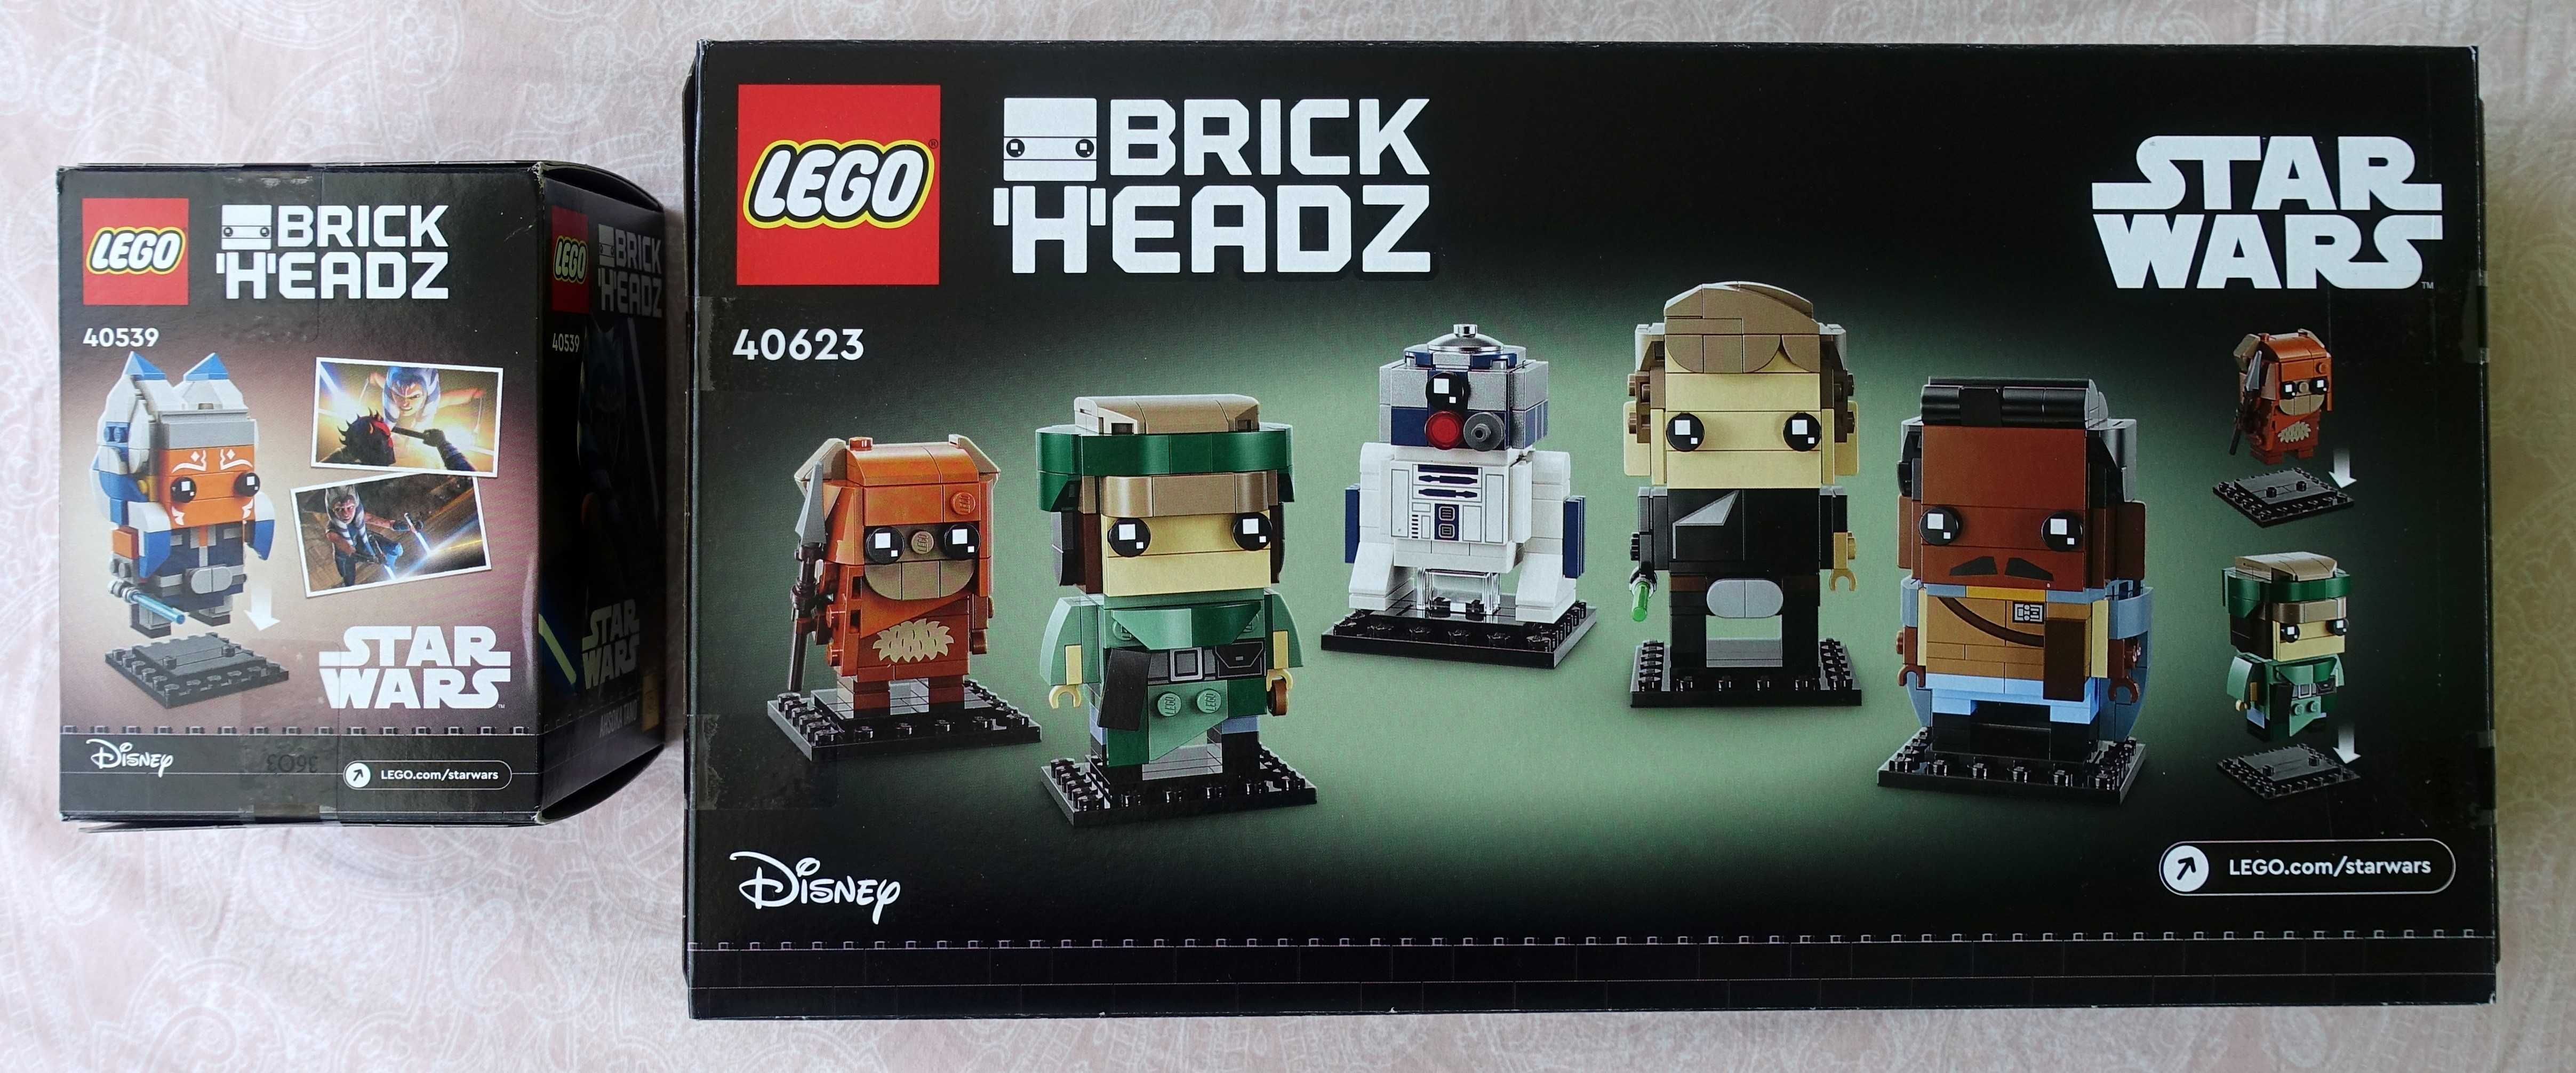 LEGO BrickHeadz Star Wars 40539 + 40623, NOWE!